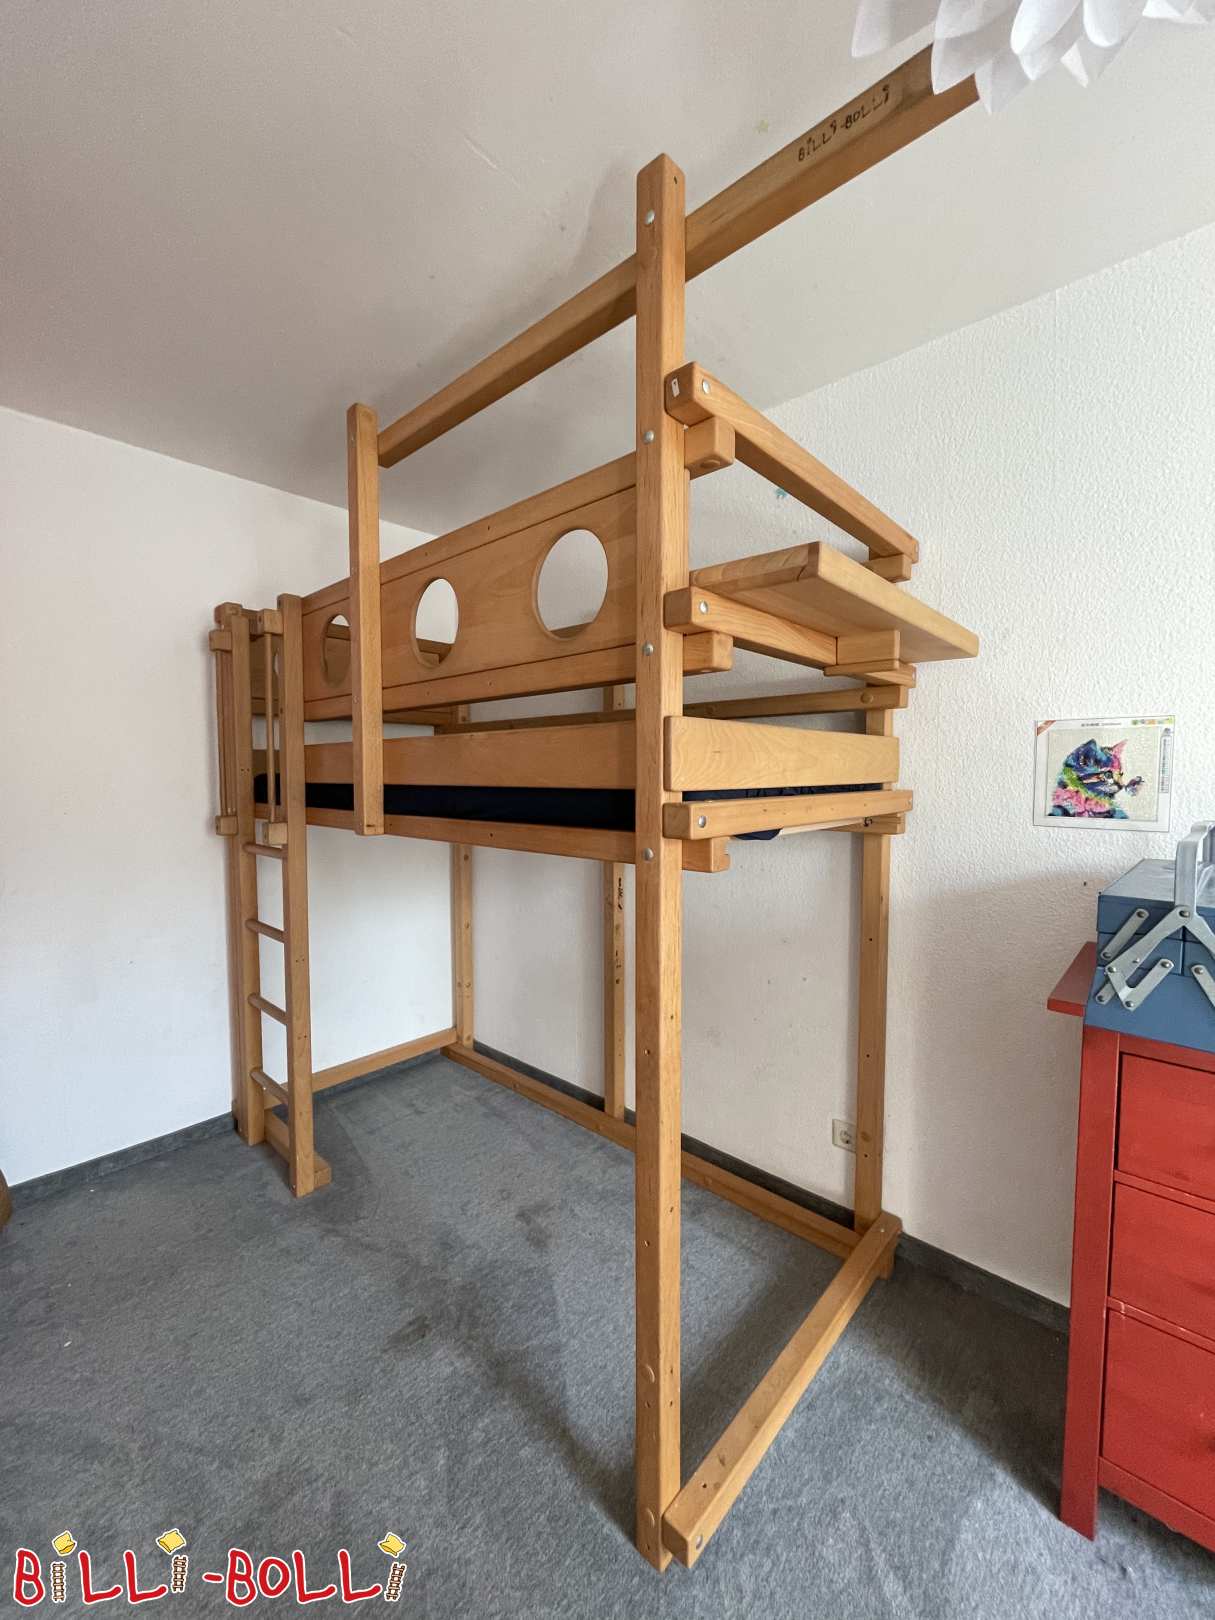 (Kayın) merdiven kalçaları ile büyüyen çatı katı yatağı. Rulo ızgara ve şilte dahil (Kategori: Çocukla birlikte büyüyen çatı katı yatağı kullanılmış)